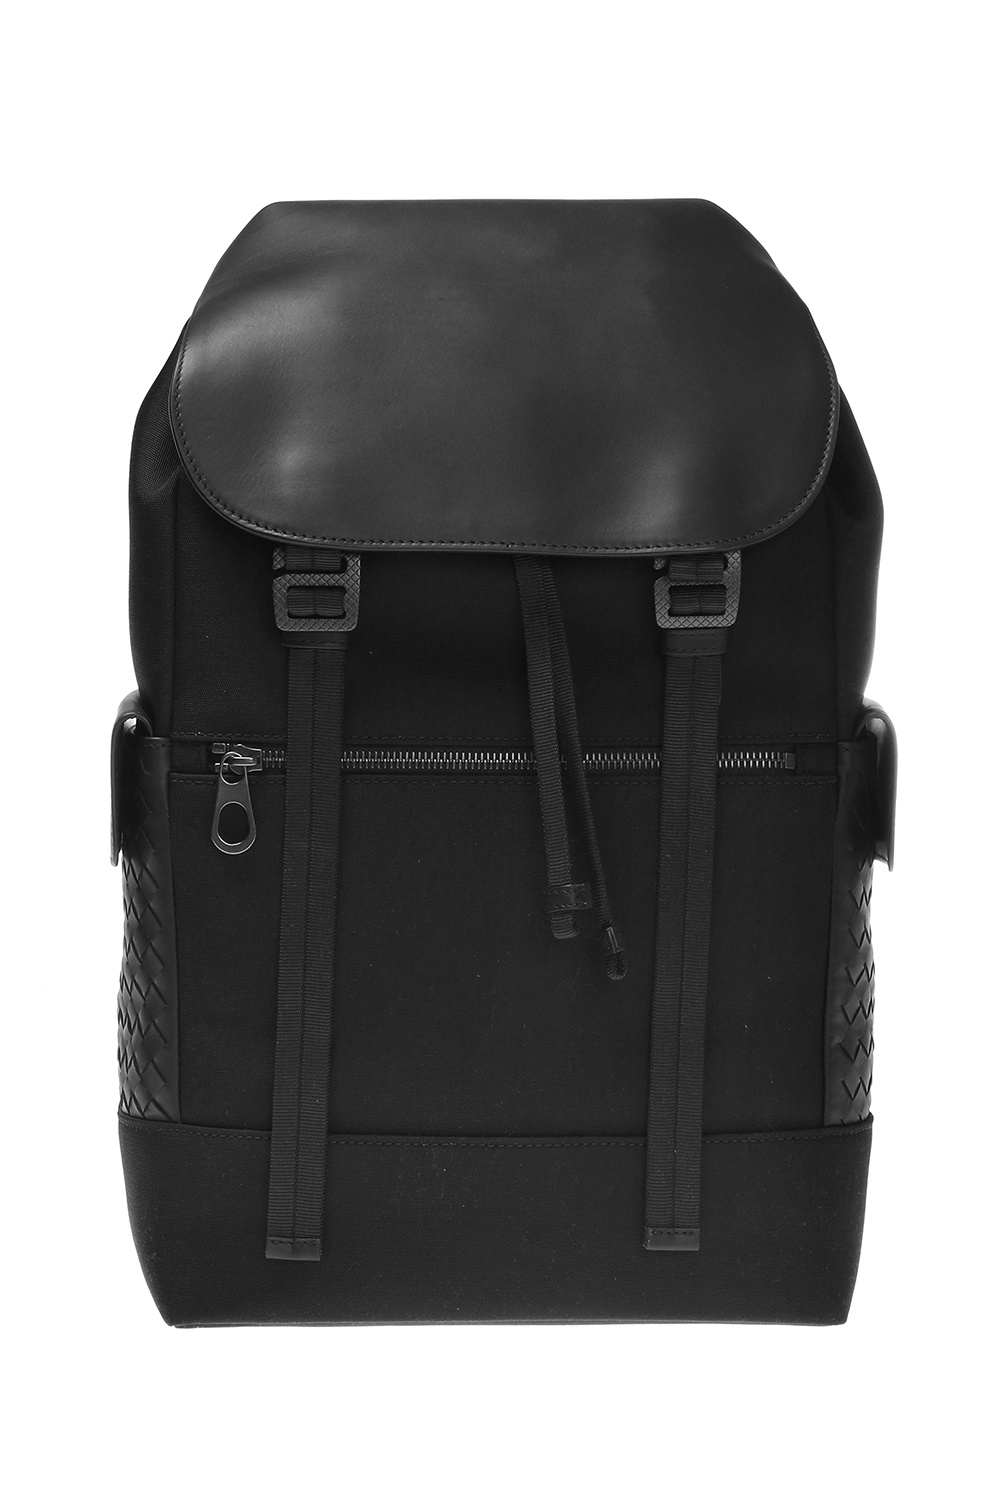 Black Intrecciato-leather backpack, Bottega Veneta